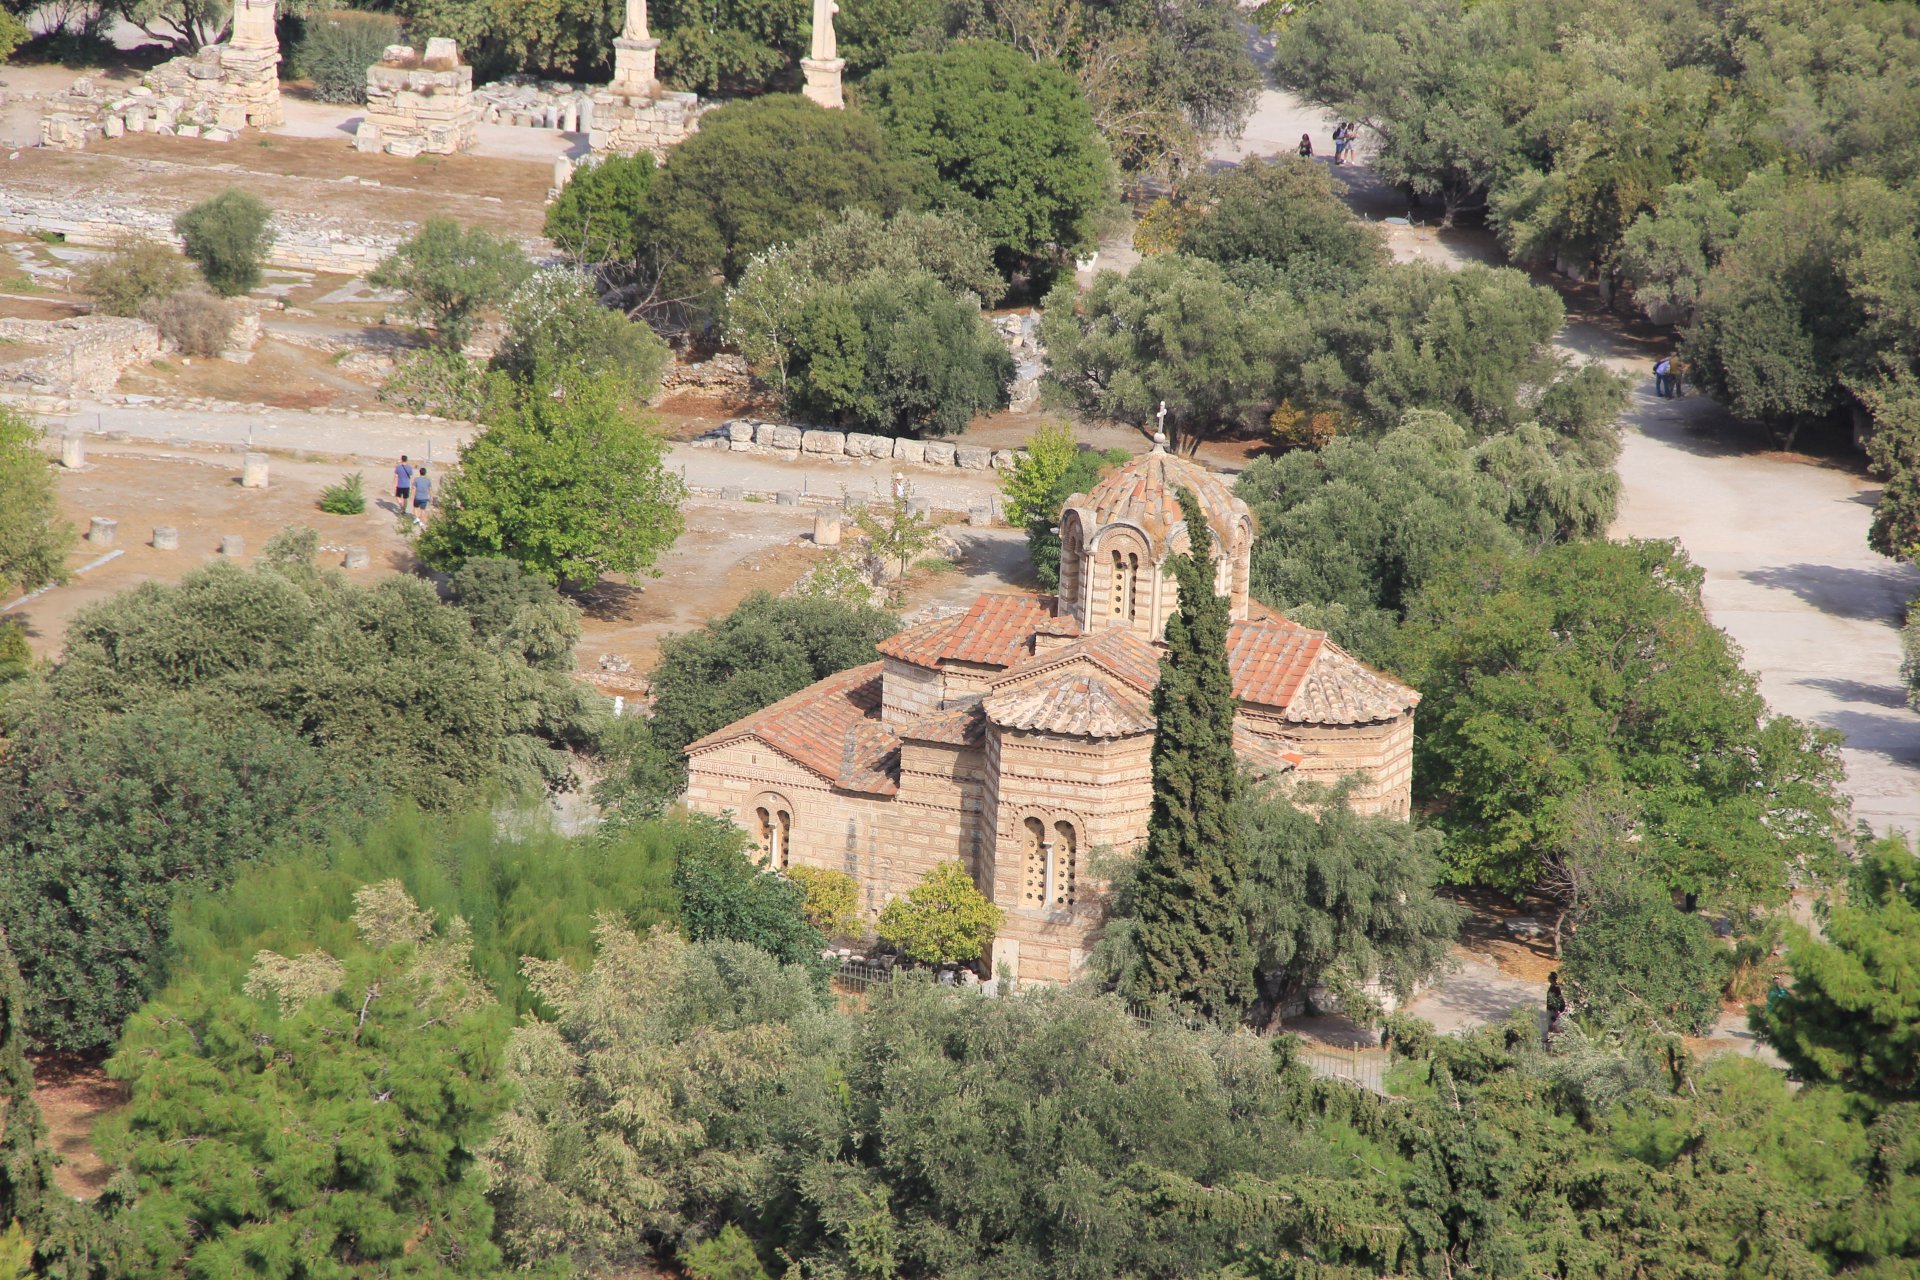 Agora Ateńska: Kościół Świętych Apostołów